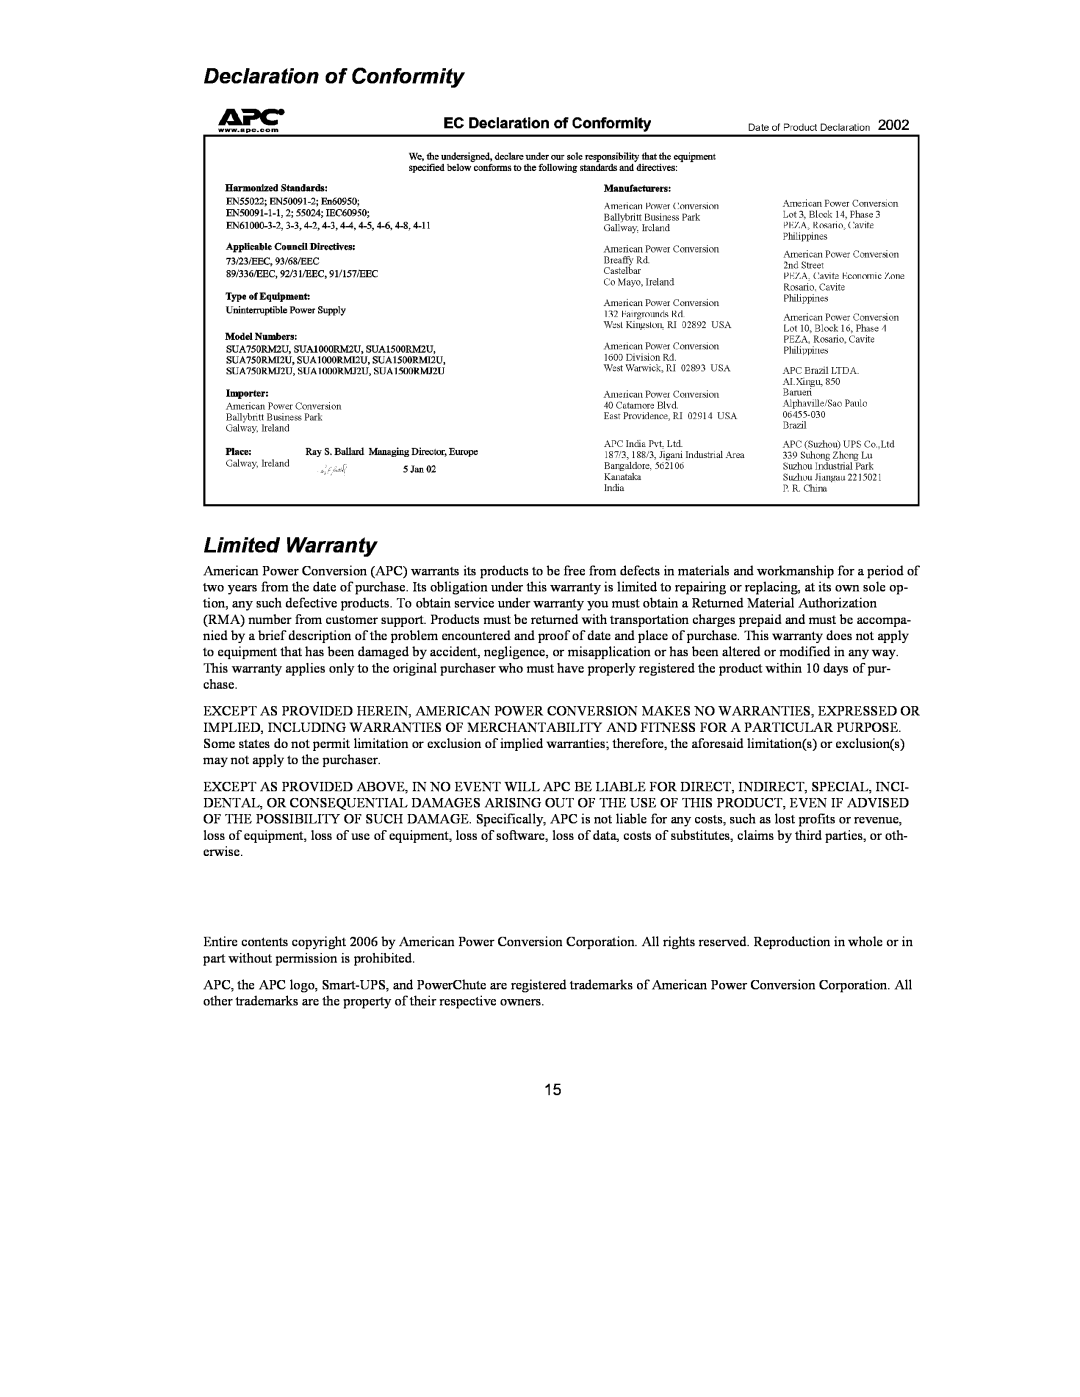 American Power Conversion 750 VA user manual Declaration of Conformity Limited Warranty 